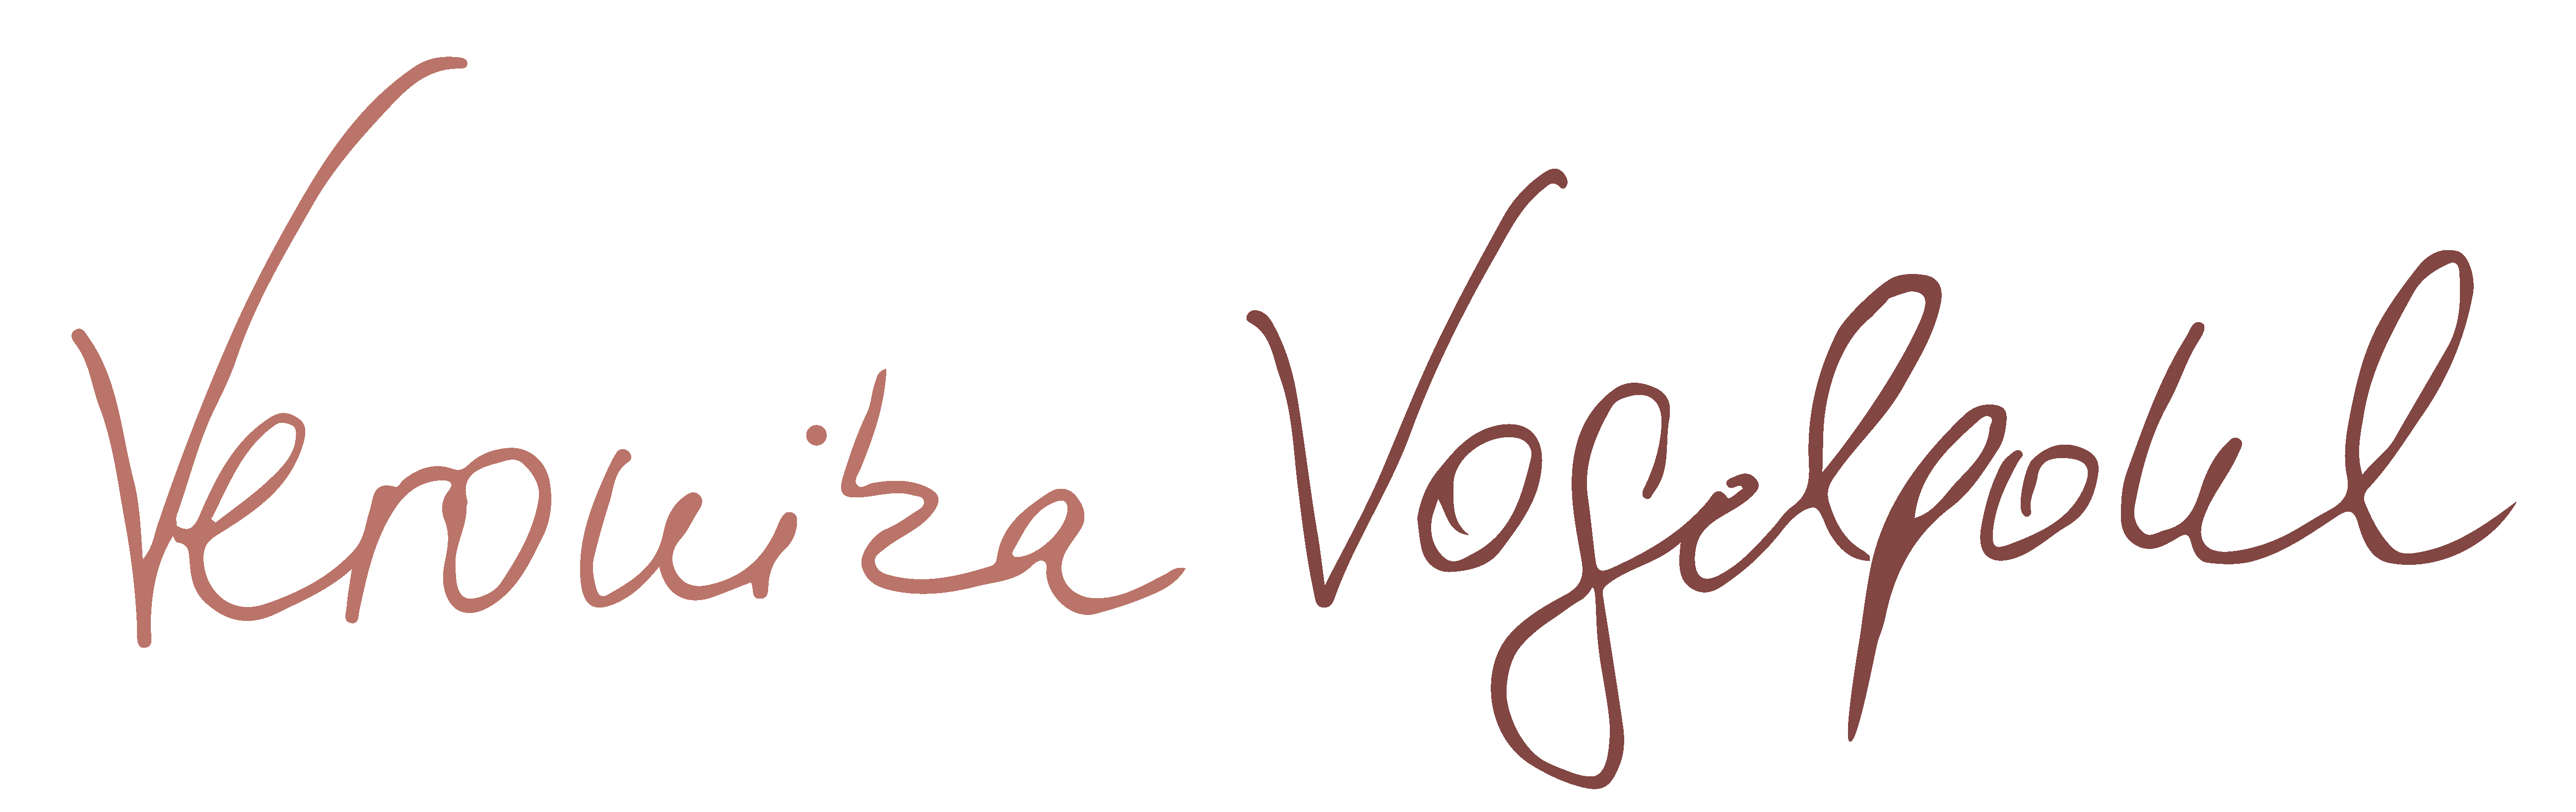 Unterschrift Veronika Vogelpohl